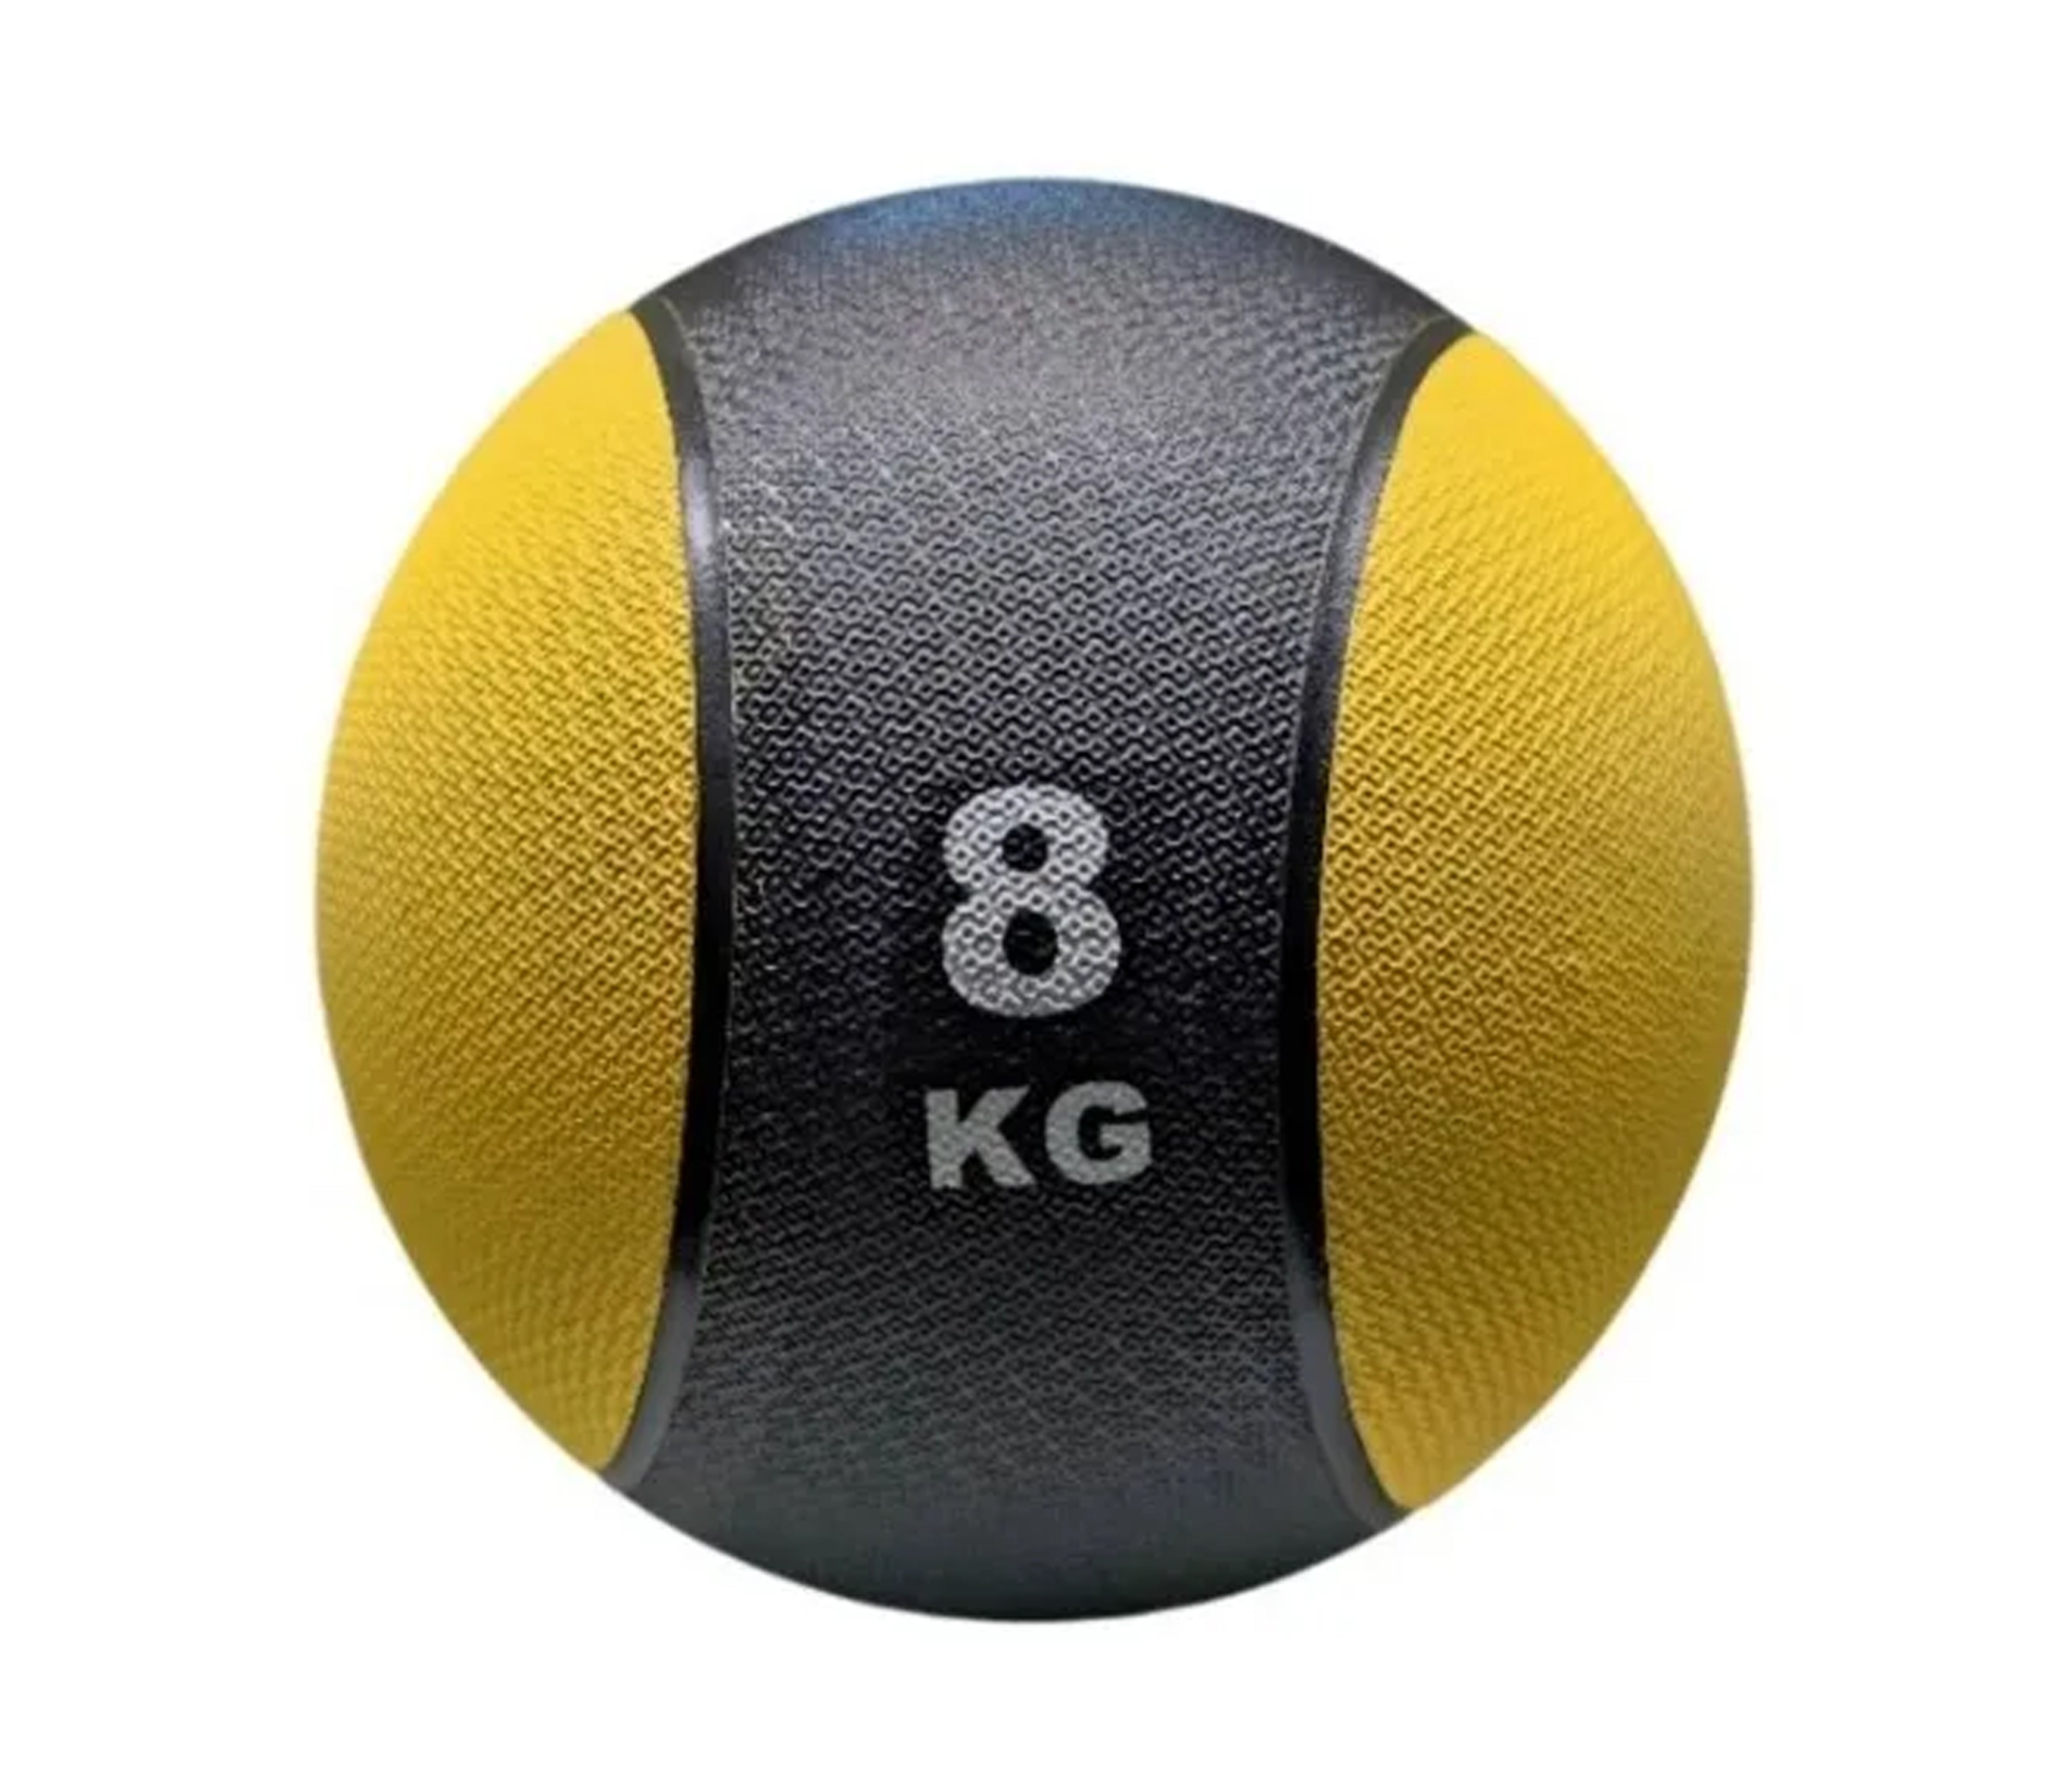 Balón Medicinal Comax de Piel color negro 5 Kg - Tienda Deportiva %